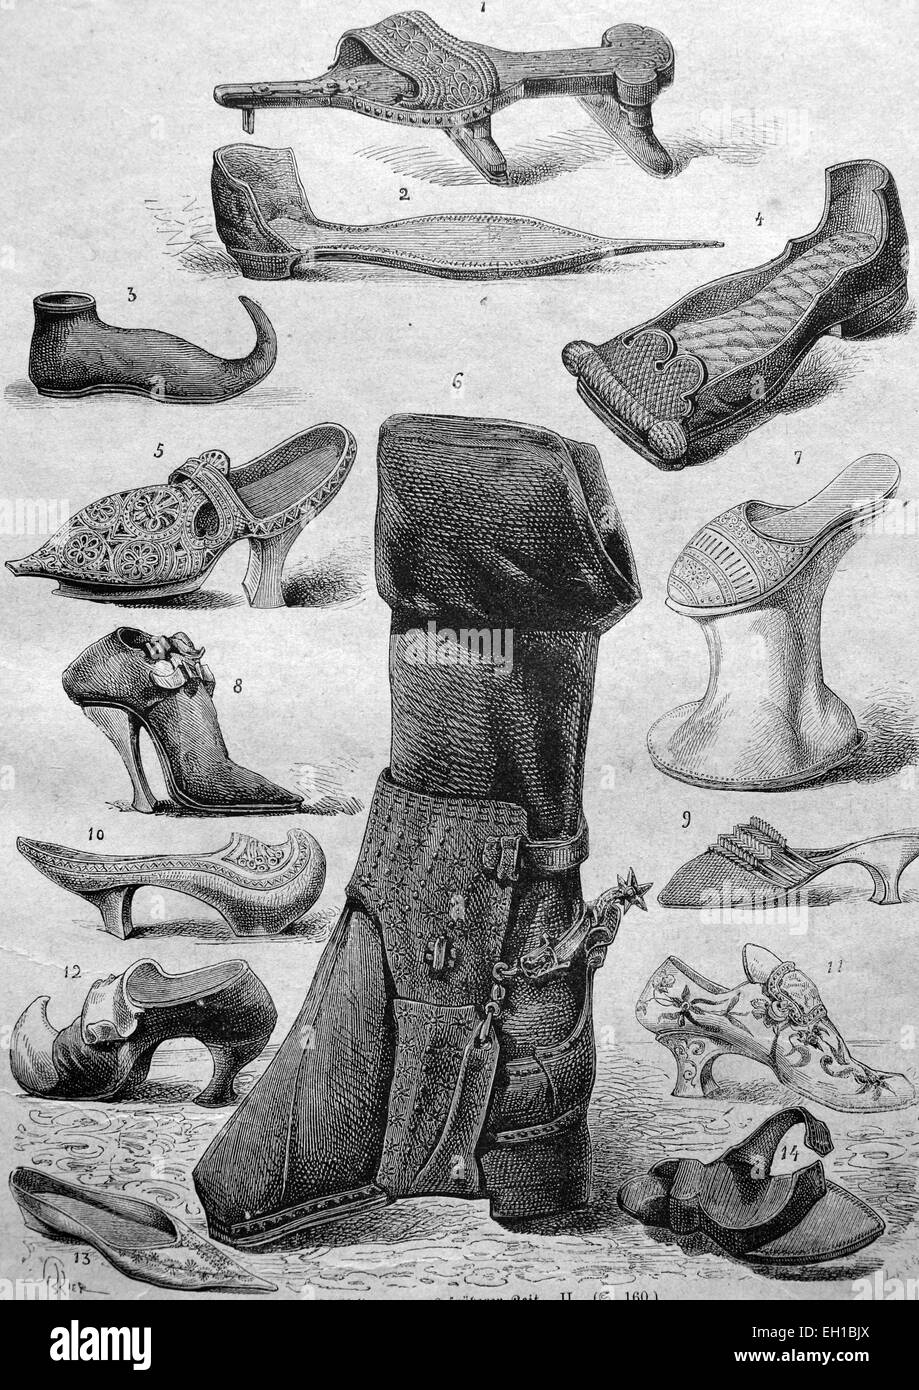 Shoe fashion du Moyen-Âge, 1 béquille chaussure, 2 - pic pointu chaussure ou poulaine, 3 - chaussure de pointe ou poulaine, 4 télévision, 5 - chaussures - chaussures en bois, début du 17e siècle, les bottes d'équitation - 6, 7, 8 - Kuehfuss - talons hauts, 9 - chaussons de l'époque de la Révolution française, 10 - 11 - en bois patten, chaussure en cuir vénitien en bois 12 - chaussure avec une soudure en cuir-13 - Atlas d'un courtier 14 chaussures - chaussures en bois simple, illustration historique, 1877 Banque D'Images